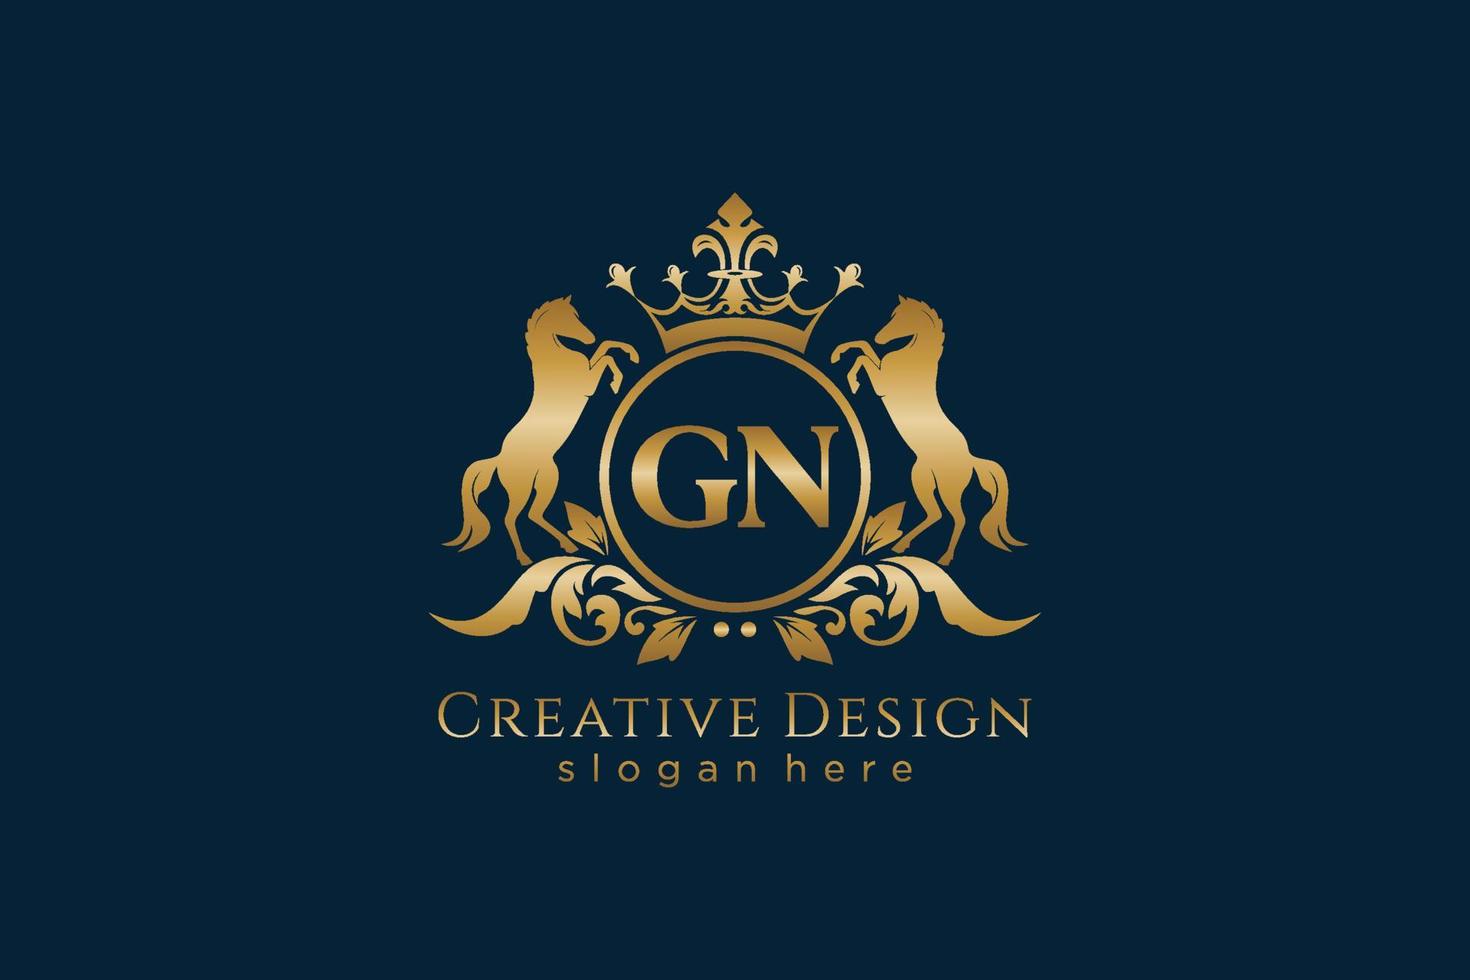 crista dourada retro gn inicial com círculo e dois cavalos, modelo de crachá com pergaminhos e coroa real - perfeito para projetos de marca luxuosos vetor